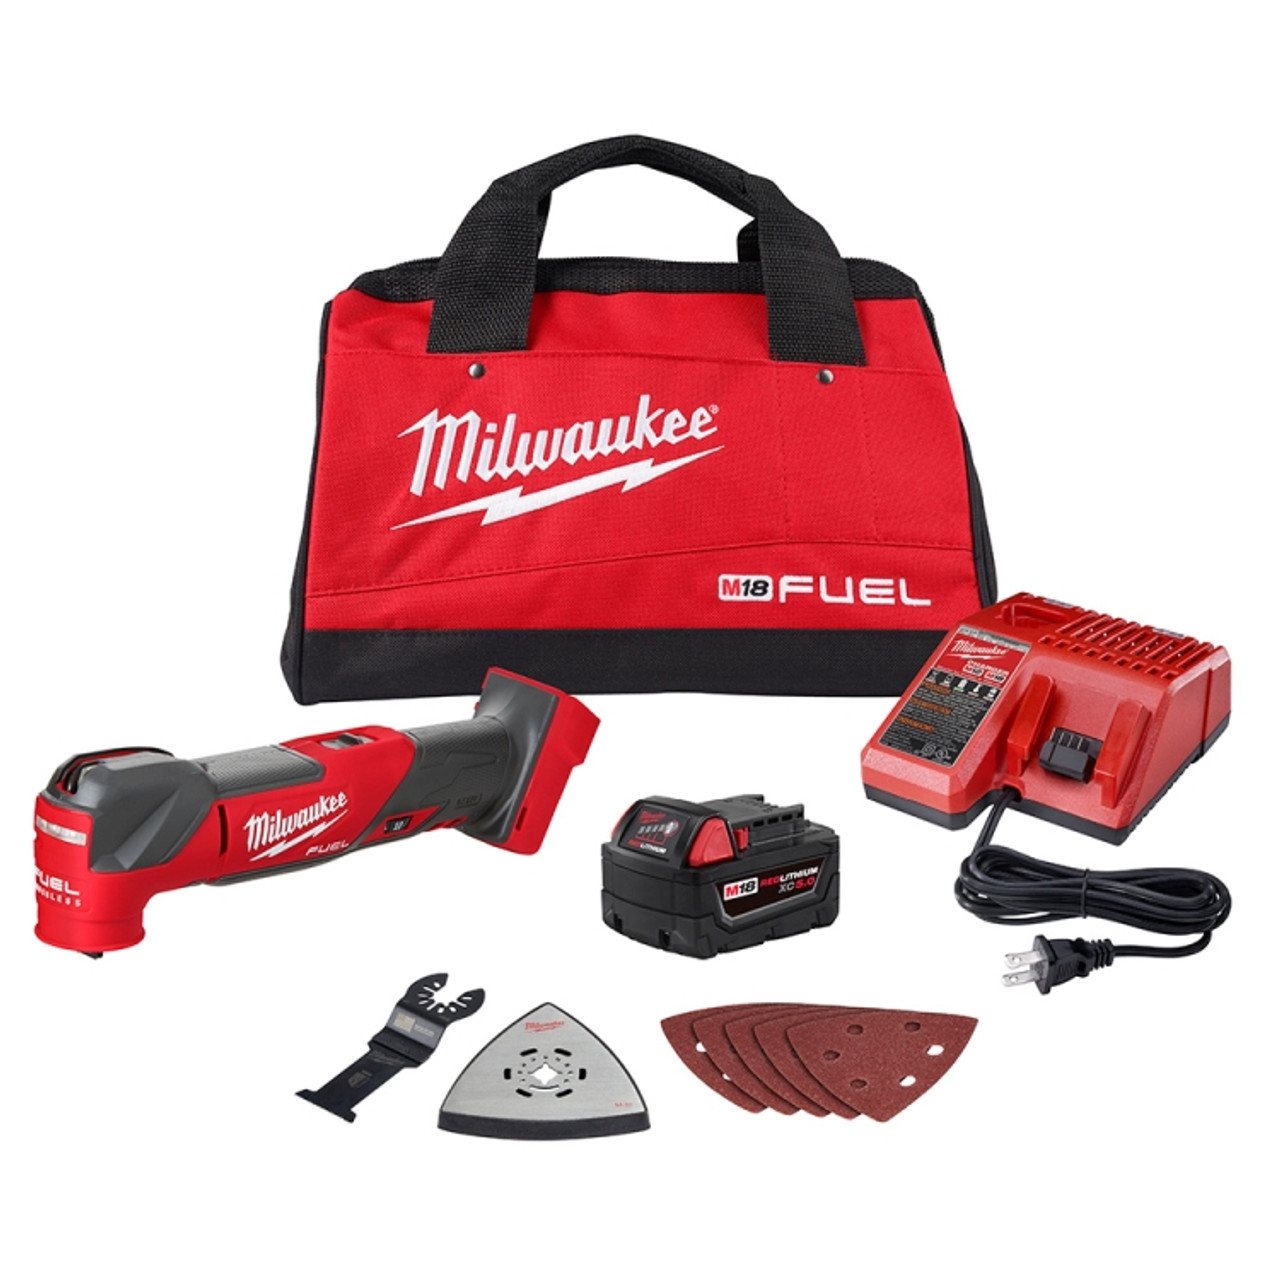 Milwaukee 2836-21 M18 FUEL Oscillating Multi-Tool (Kit)